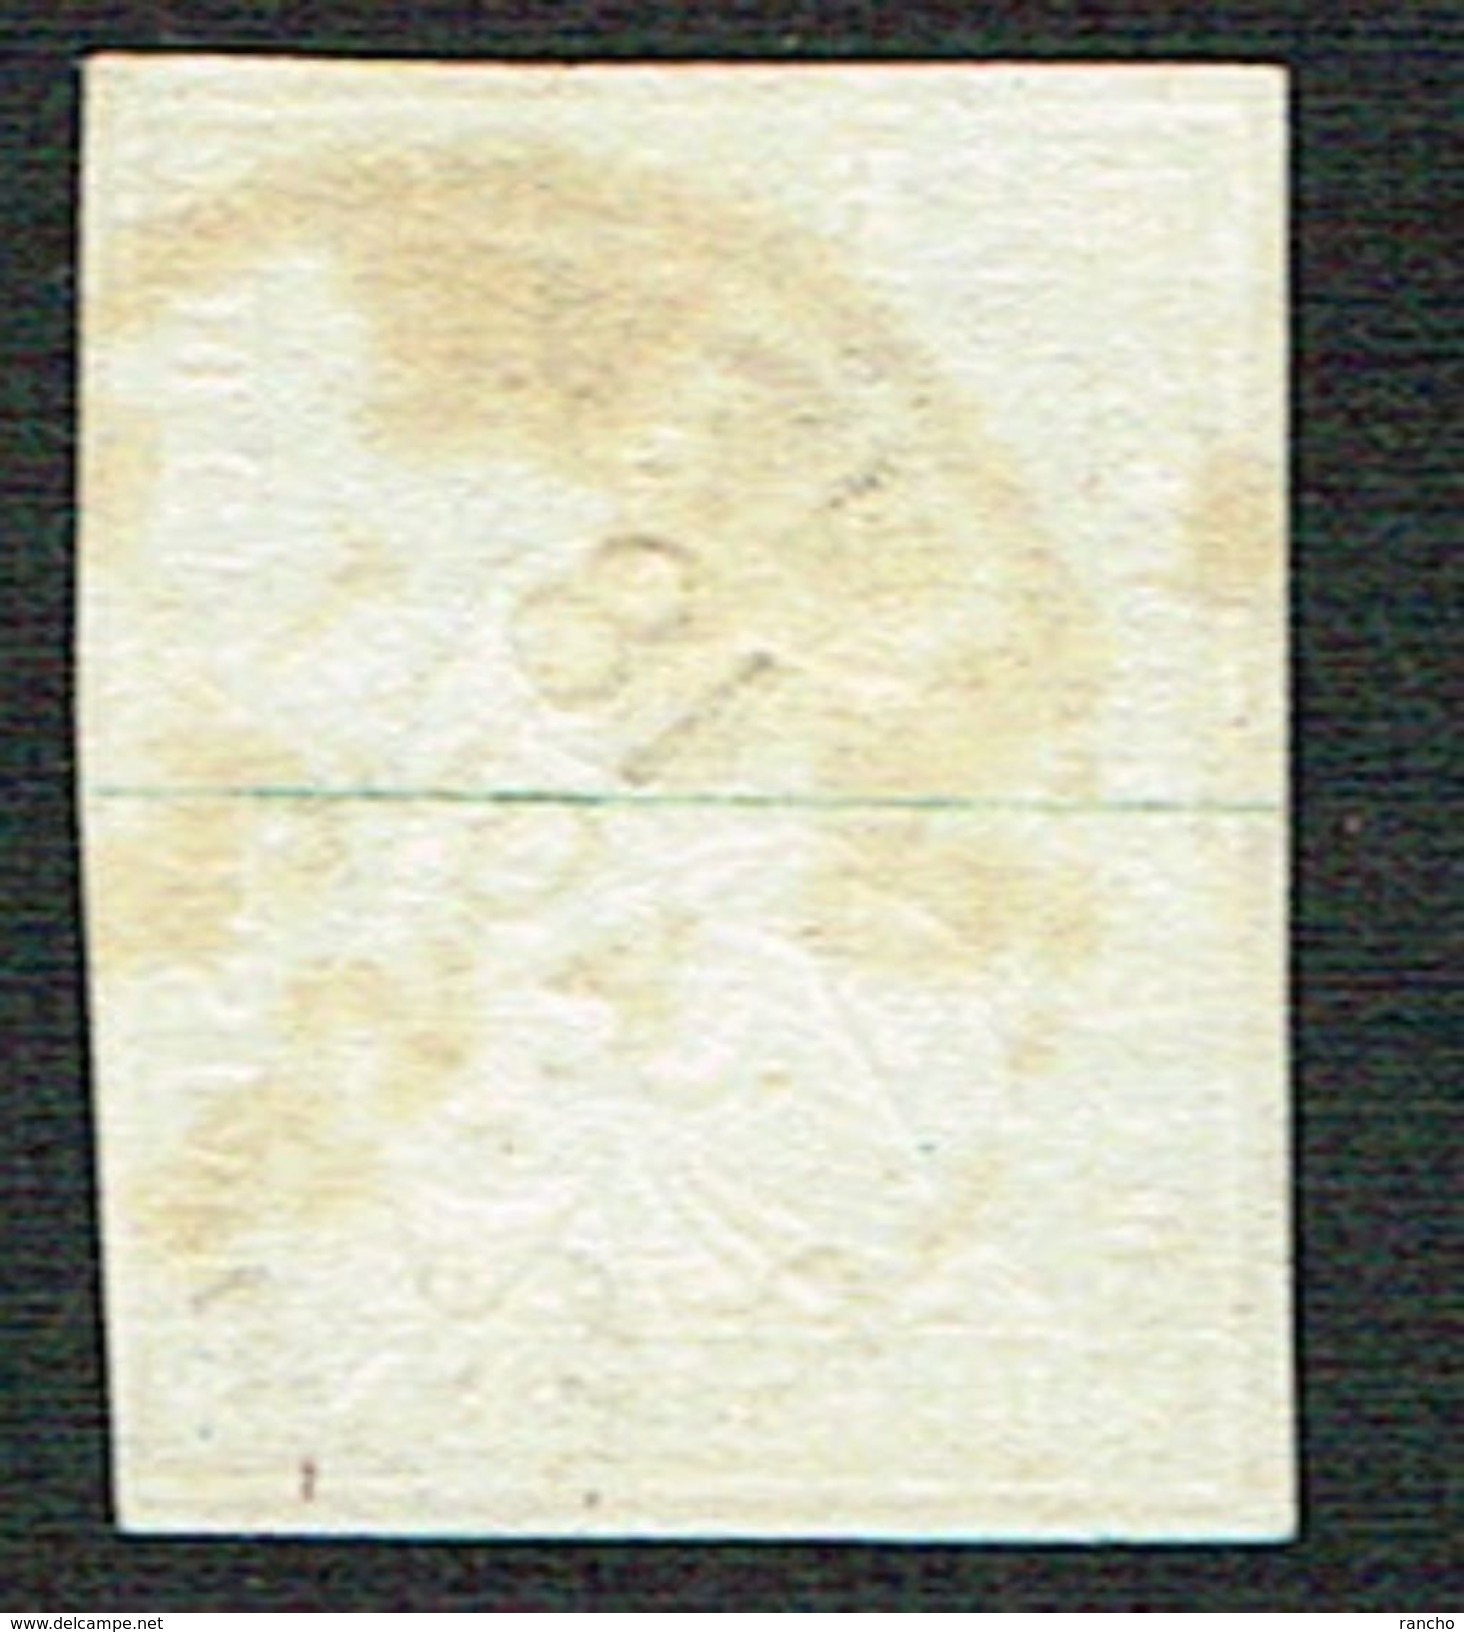 TIMBRE OBLITERE 1859 FIL DE SOIE VERT C/.S.B.K. Nr:23G. Y&TELLIER Nr:27. MICHEL Nr:14IIBym. PAPIER EPAIS. - Used Stamps